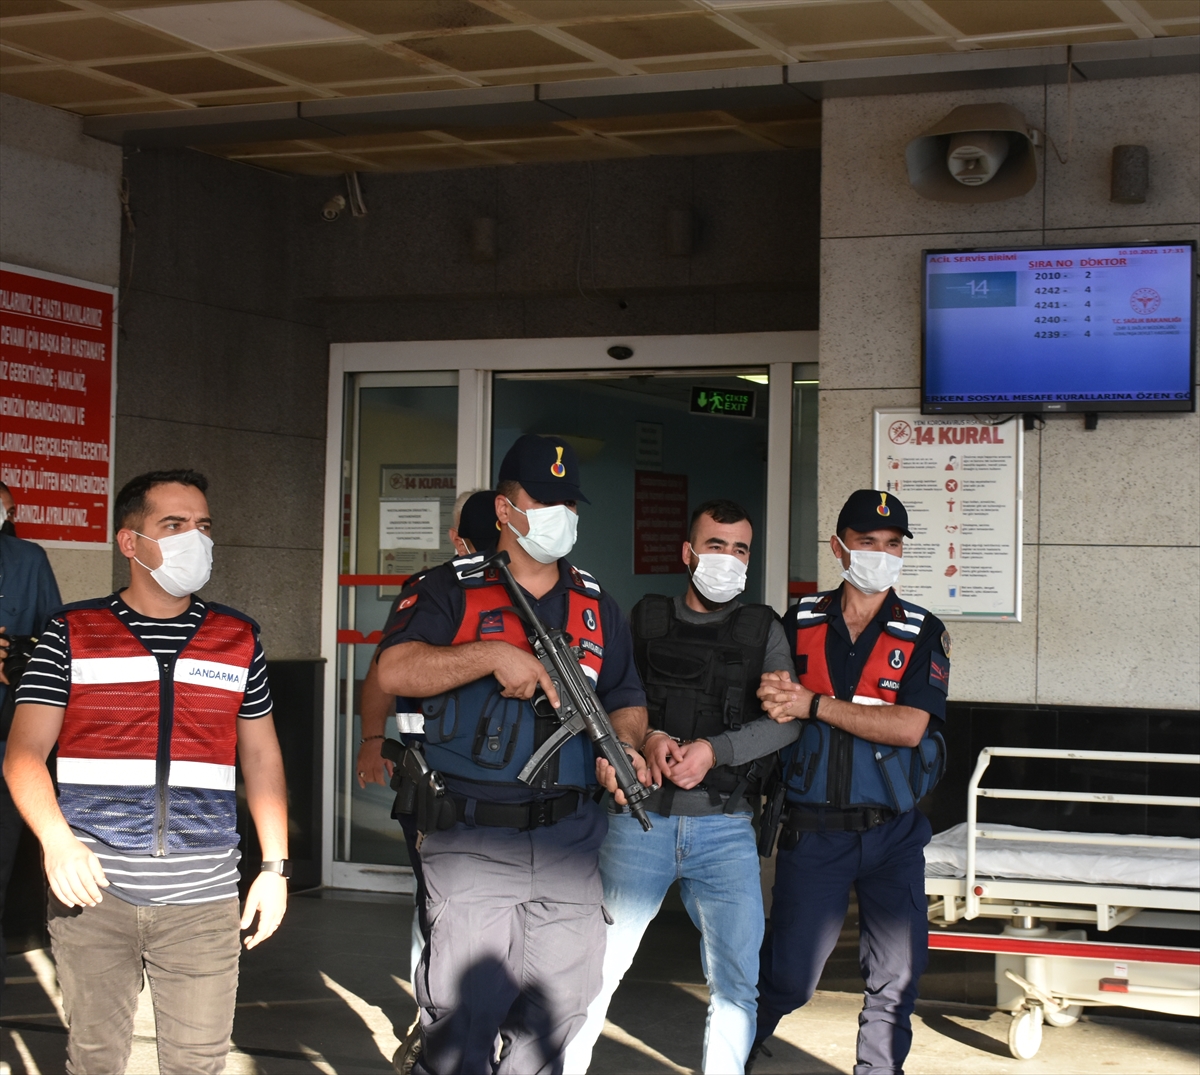 İzmir'de 1 kişinin yaralandığı silahlı saldırıyla ilgili 2 kişi tutuklandı